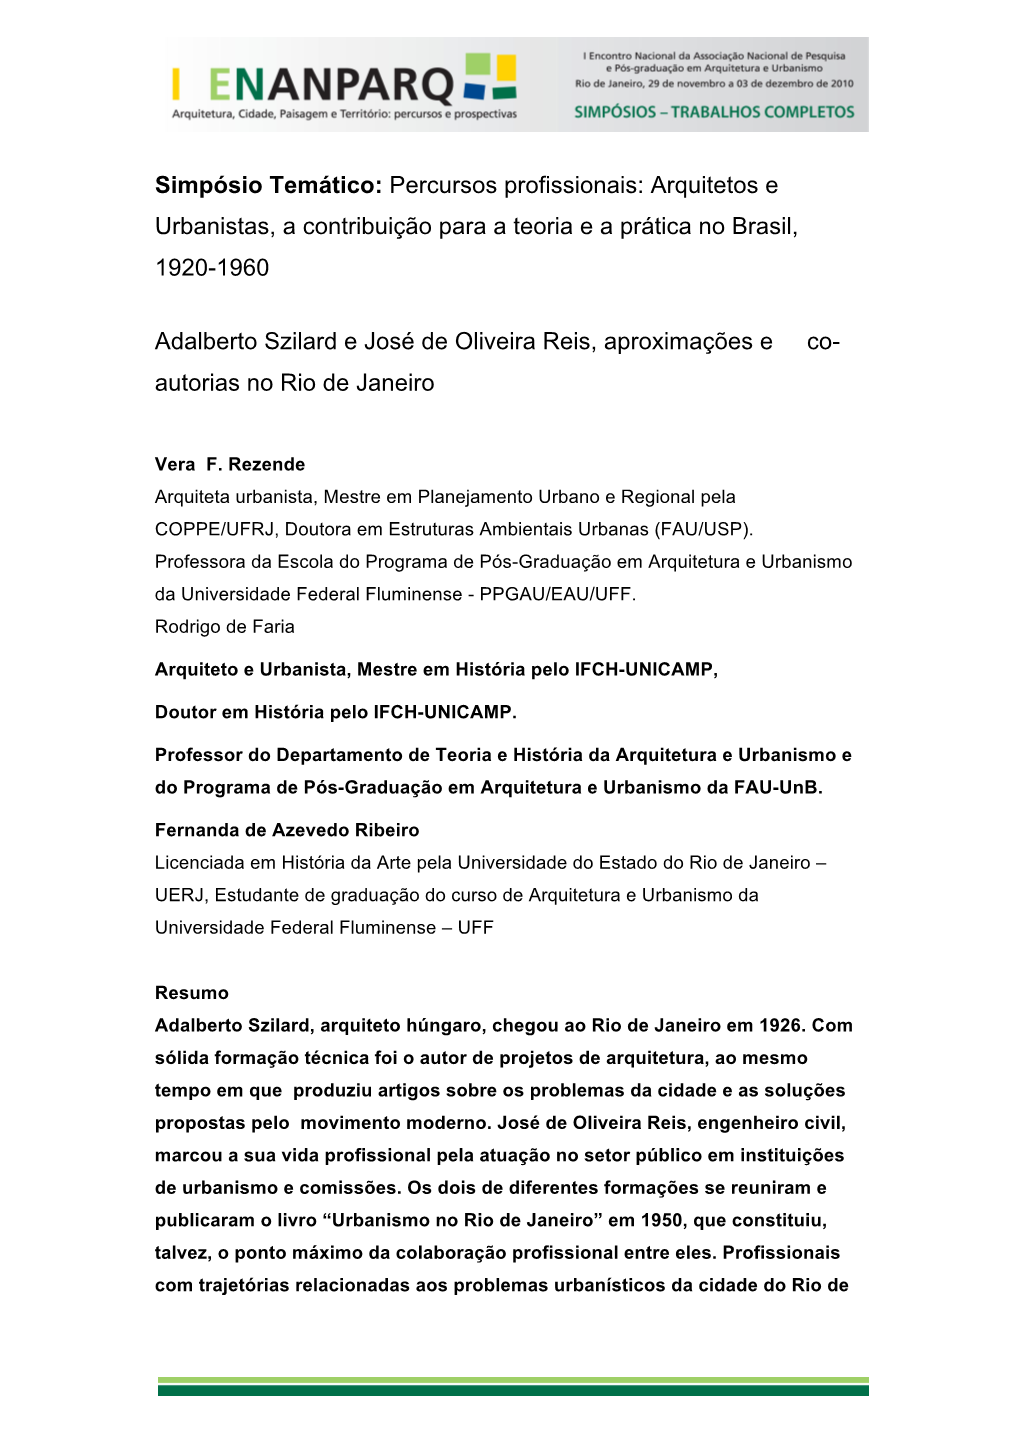 Percursos Profissionais: Arquitetos E Urbanistas, a Contribuição Para a Teoria E a Prática No Brasil, 1920-1960